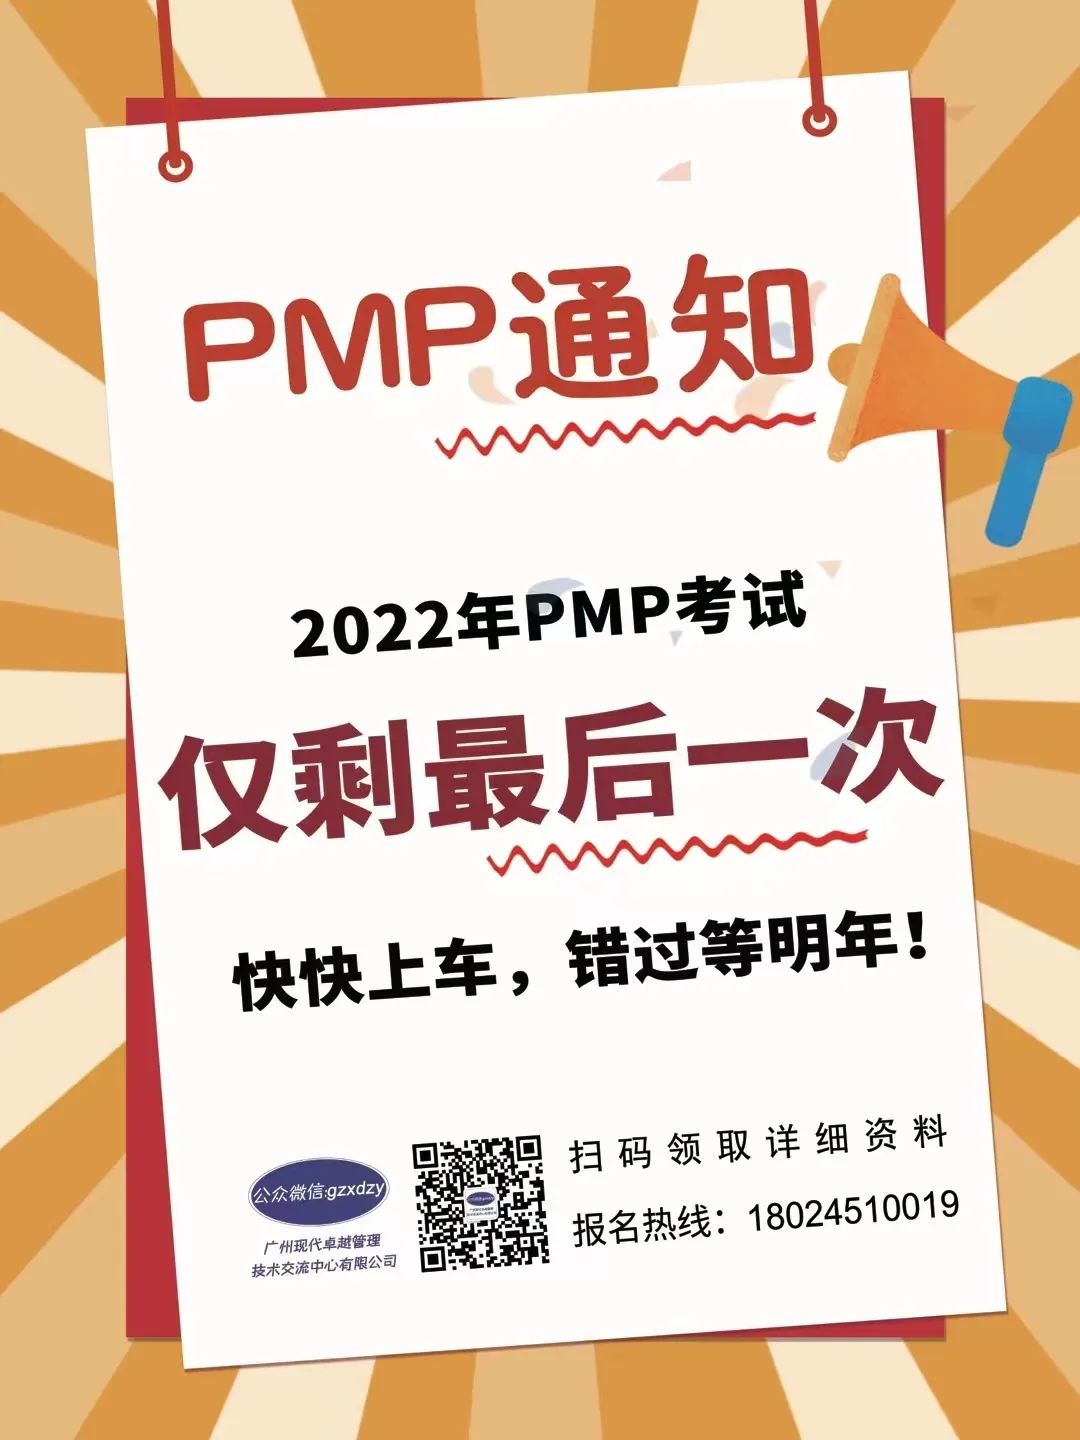 6月25日PMP考试增加了敏捷内容，而且占比50%以上，怎么考？